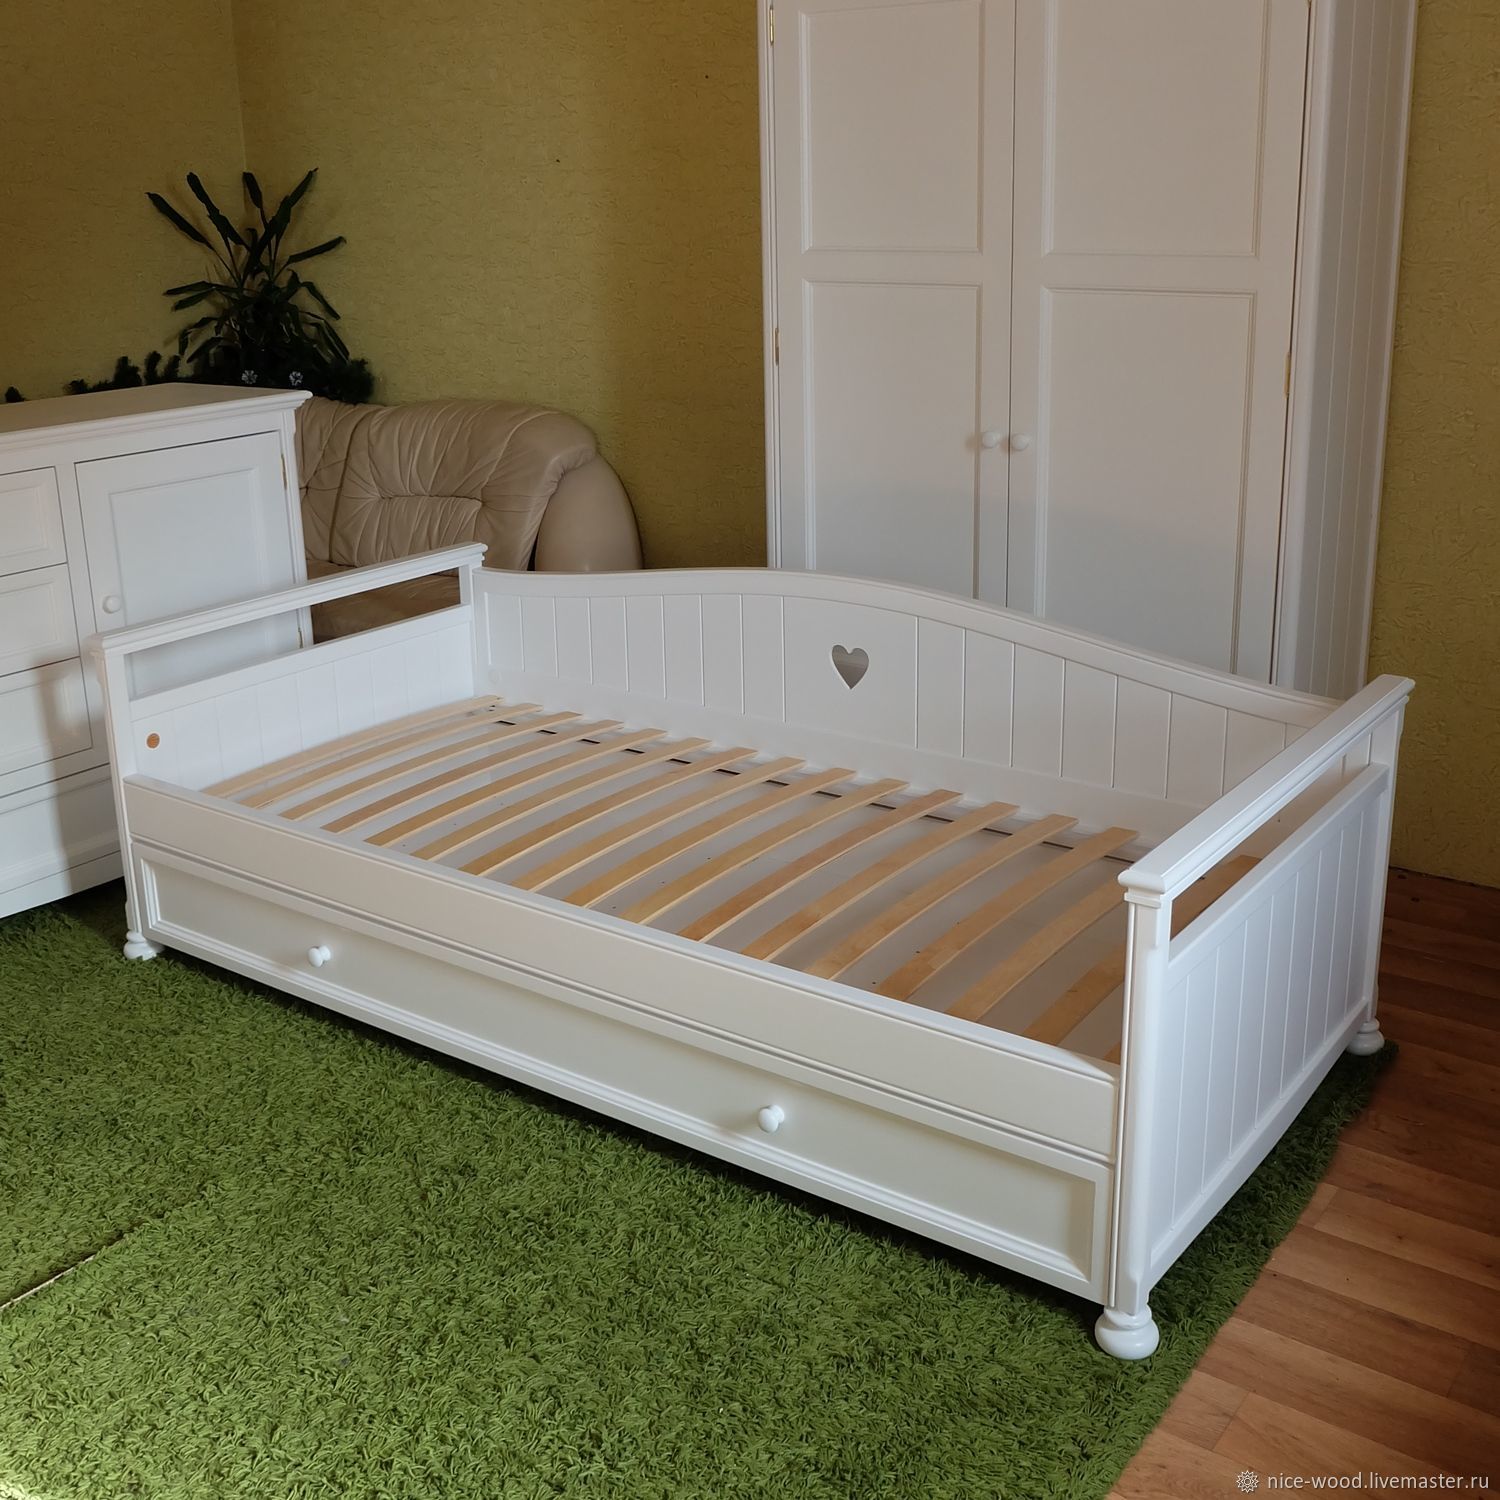 Кровать детская с выдвижным спальным местом белая